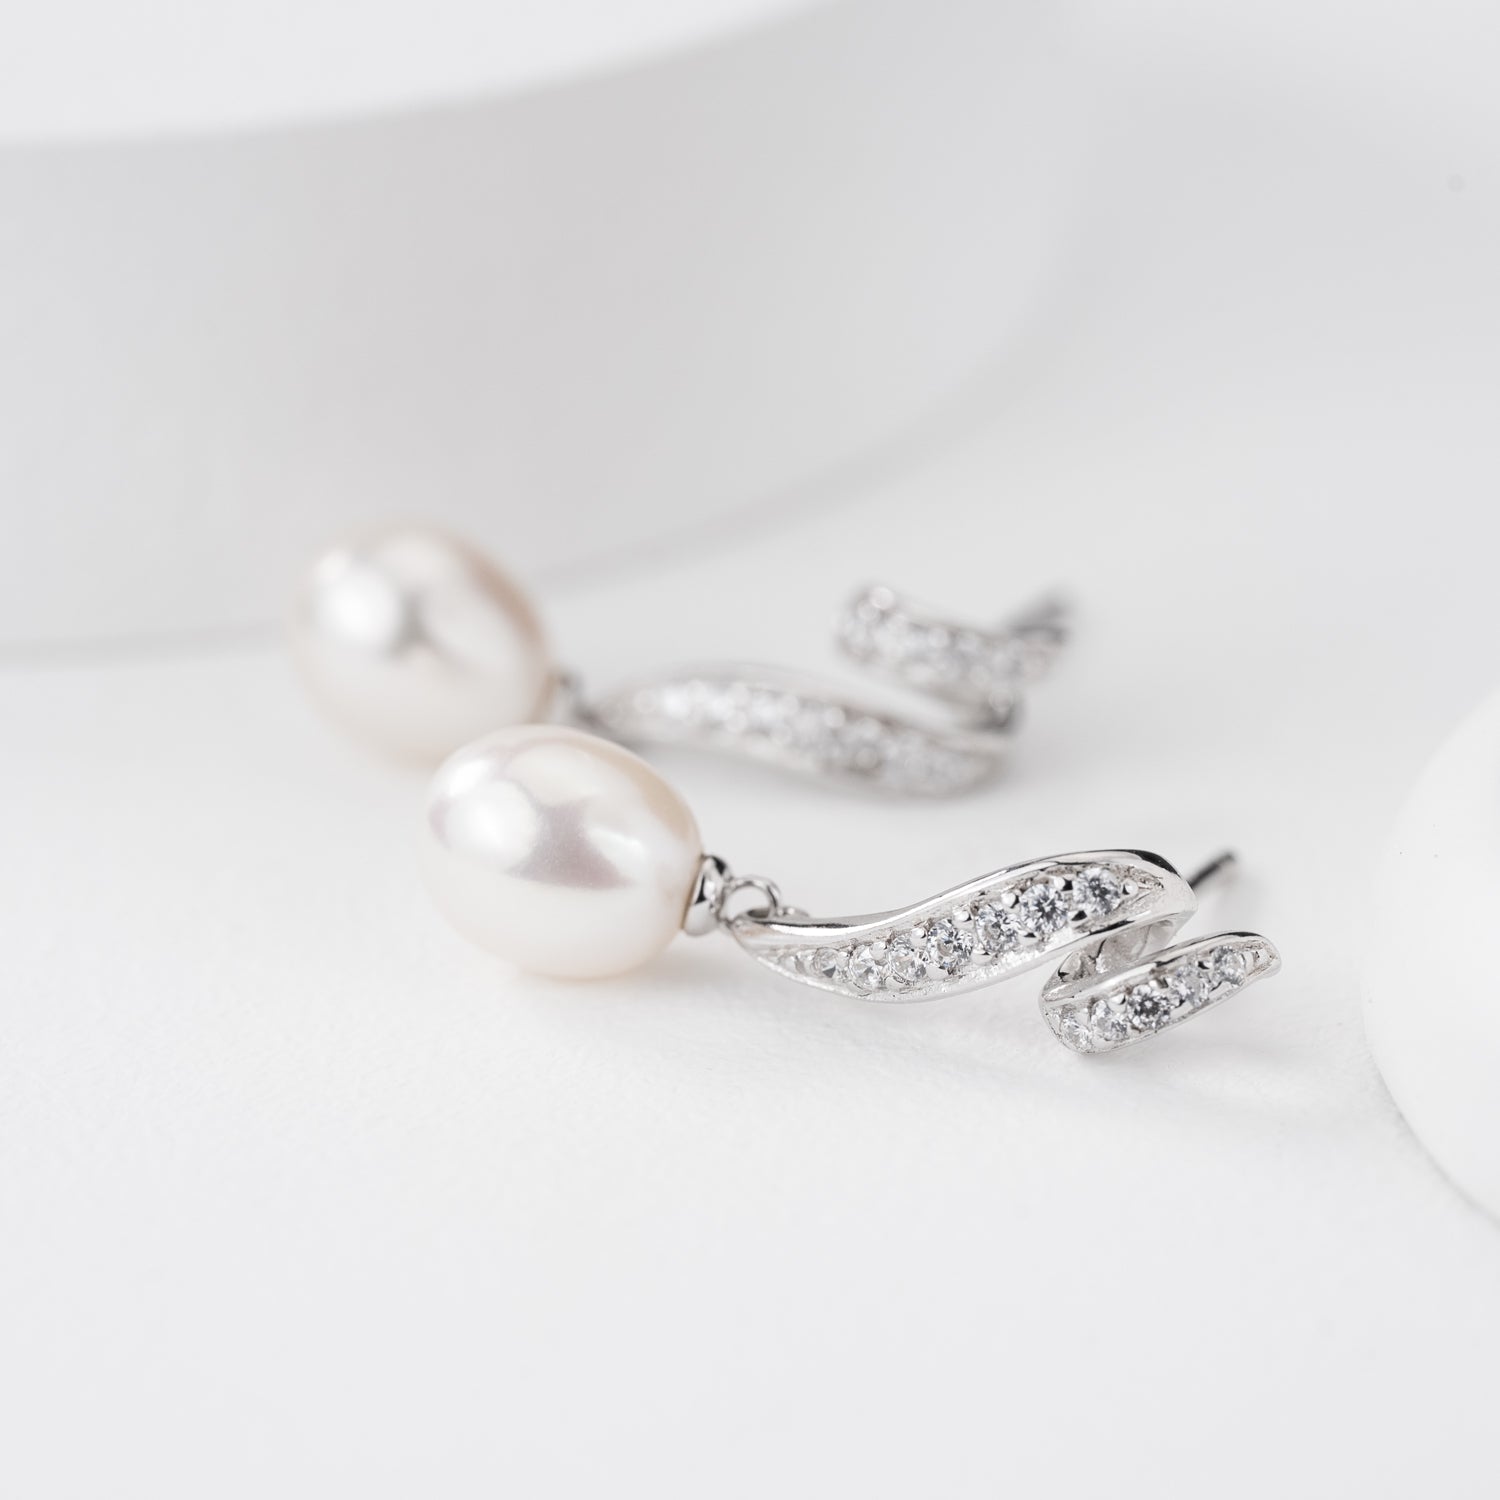 Studded Freshwater Pearl Drop Earrings